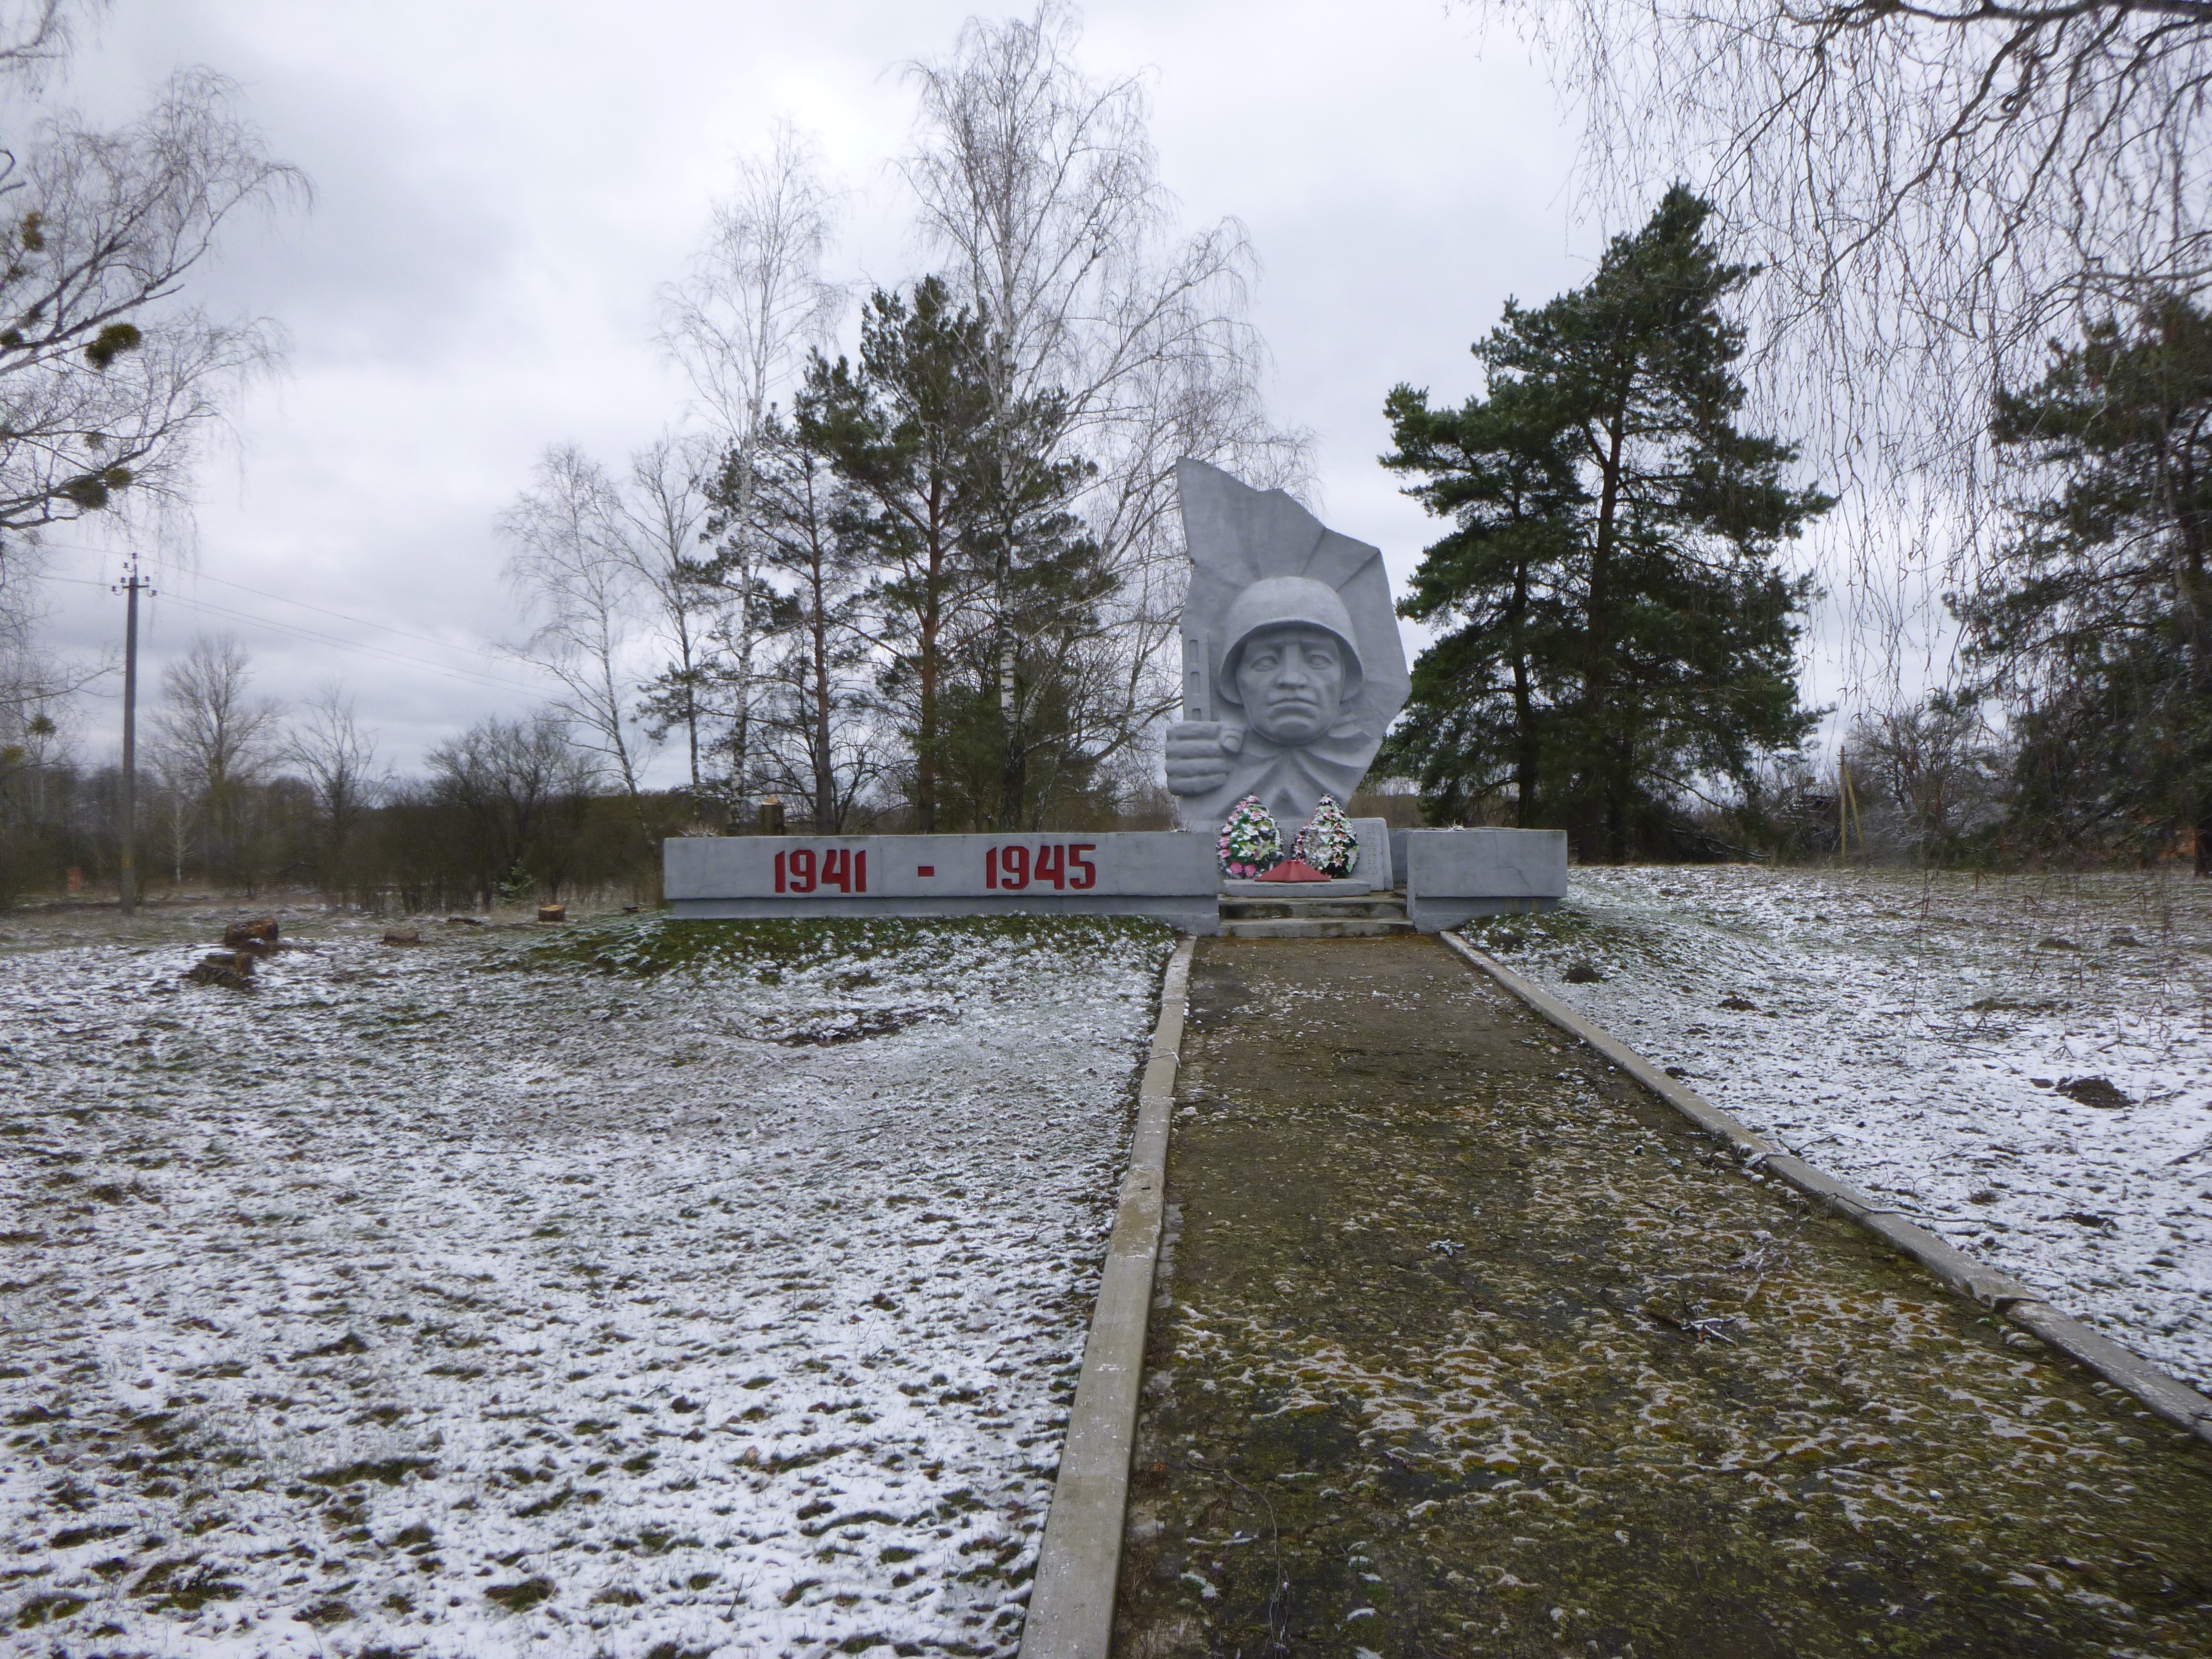 Памятник Землякам, расположенная в д. Гольцы, Пинский район, Брестская область